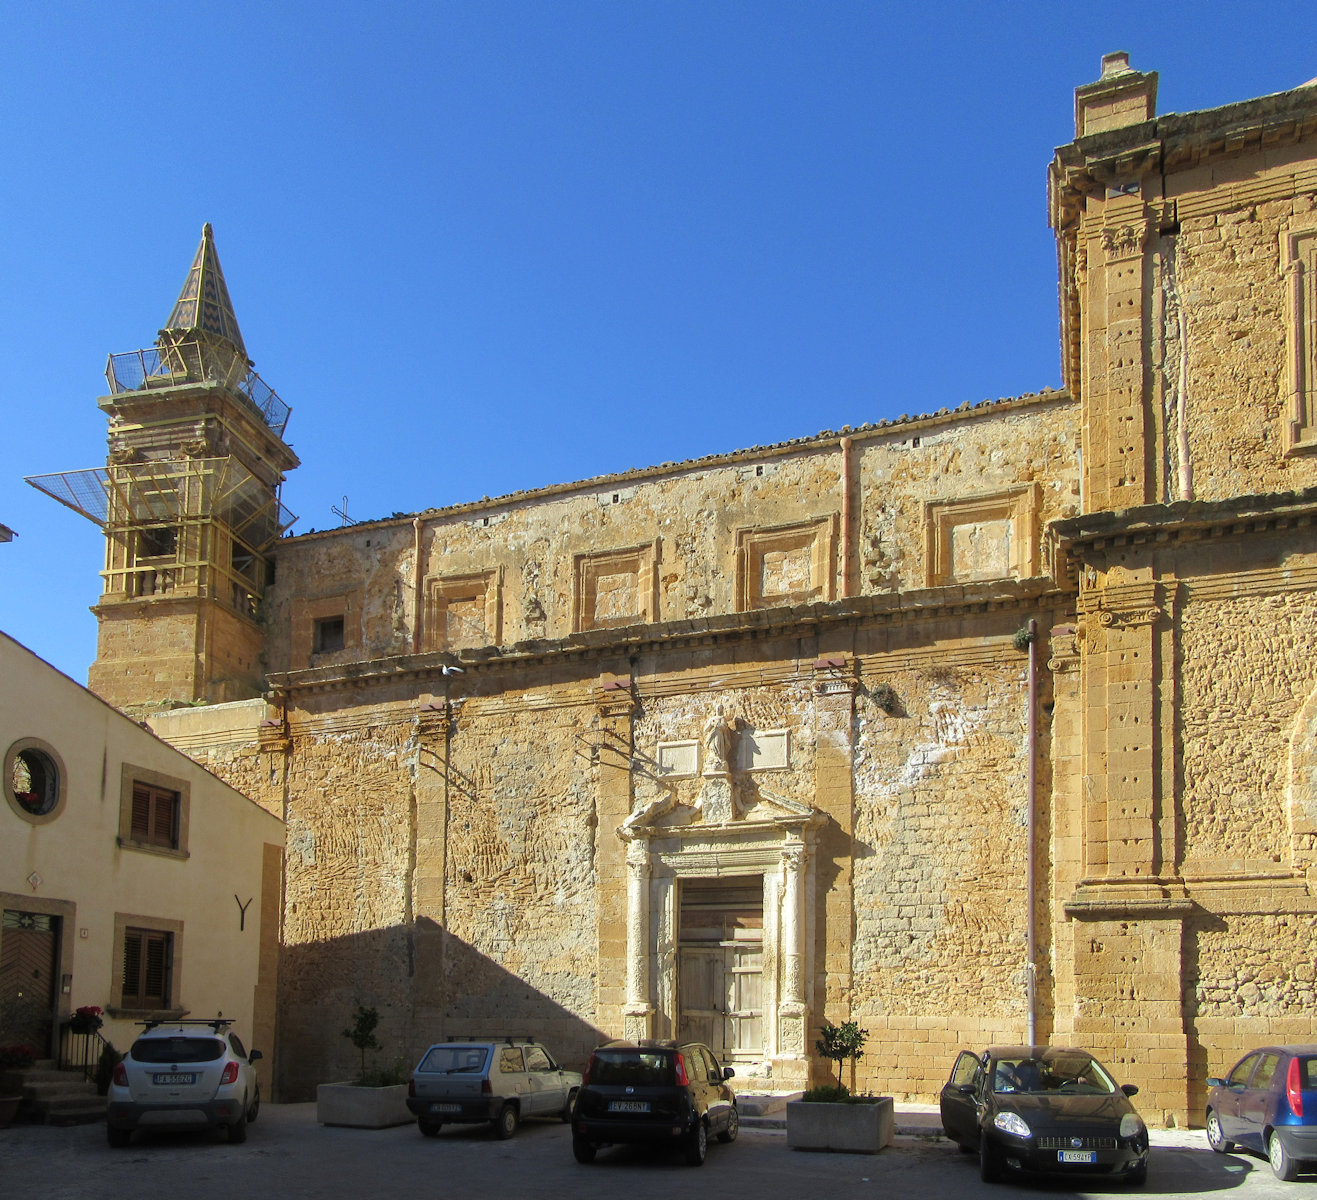 ehemalige Mutterkirche in Sambuca di Sicilia, erbaut ab 1642 an der Stelle des alten Kastells, zerstört beim Erdbeben 1968